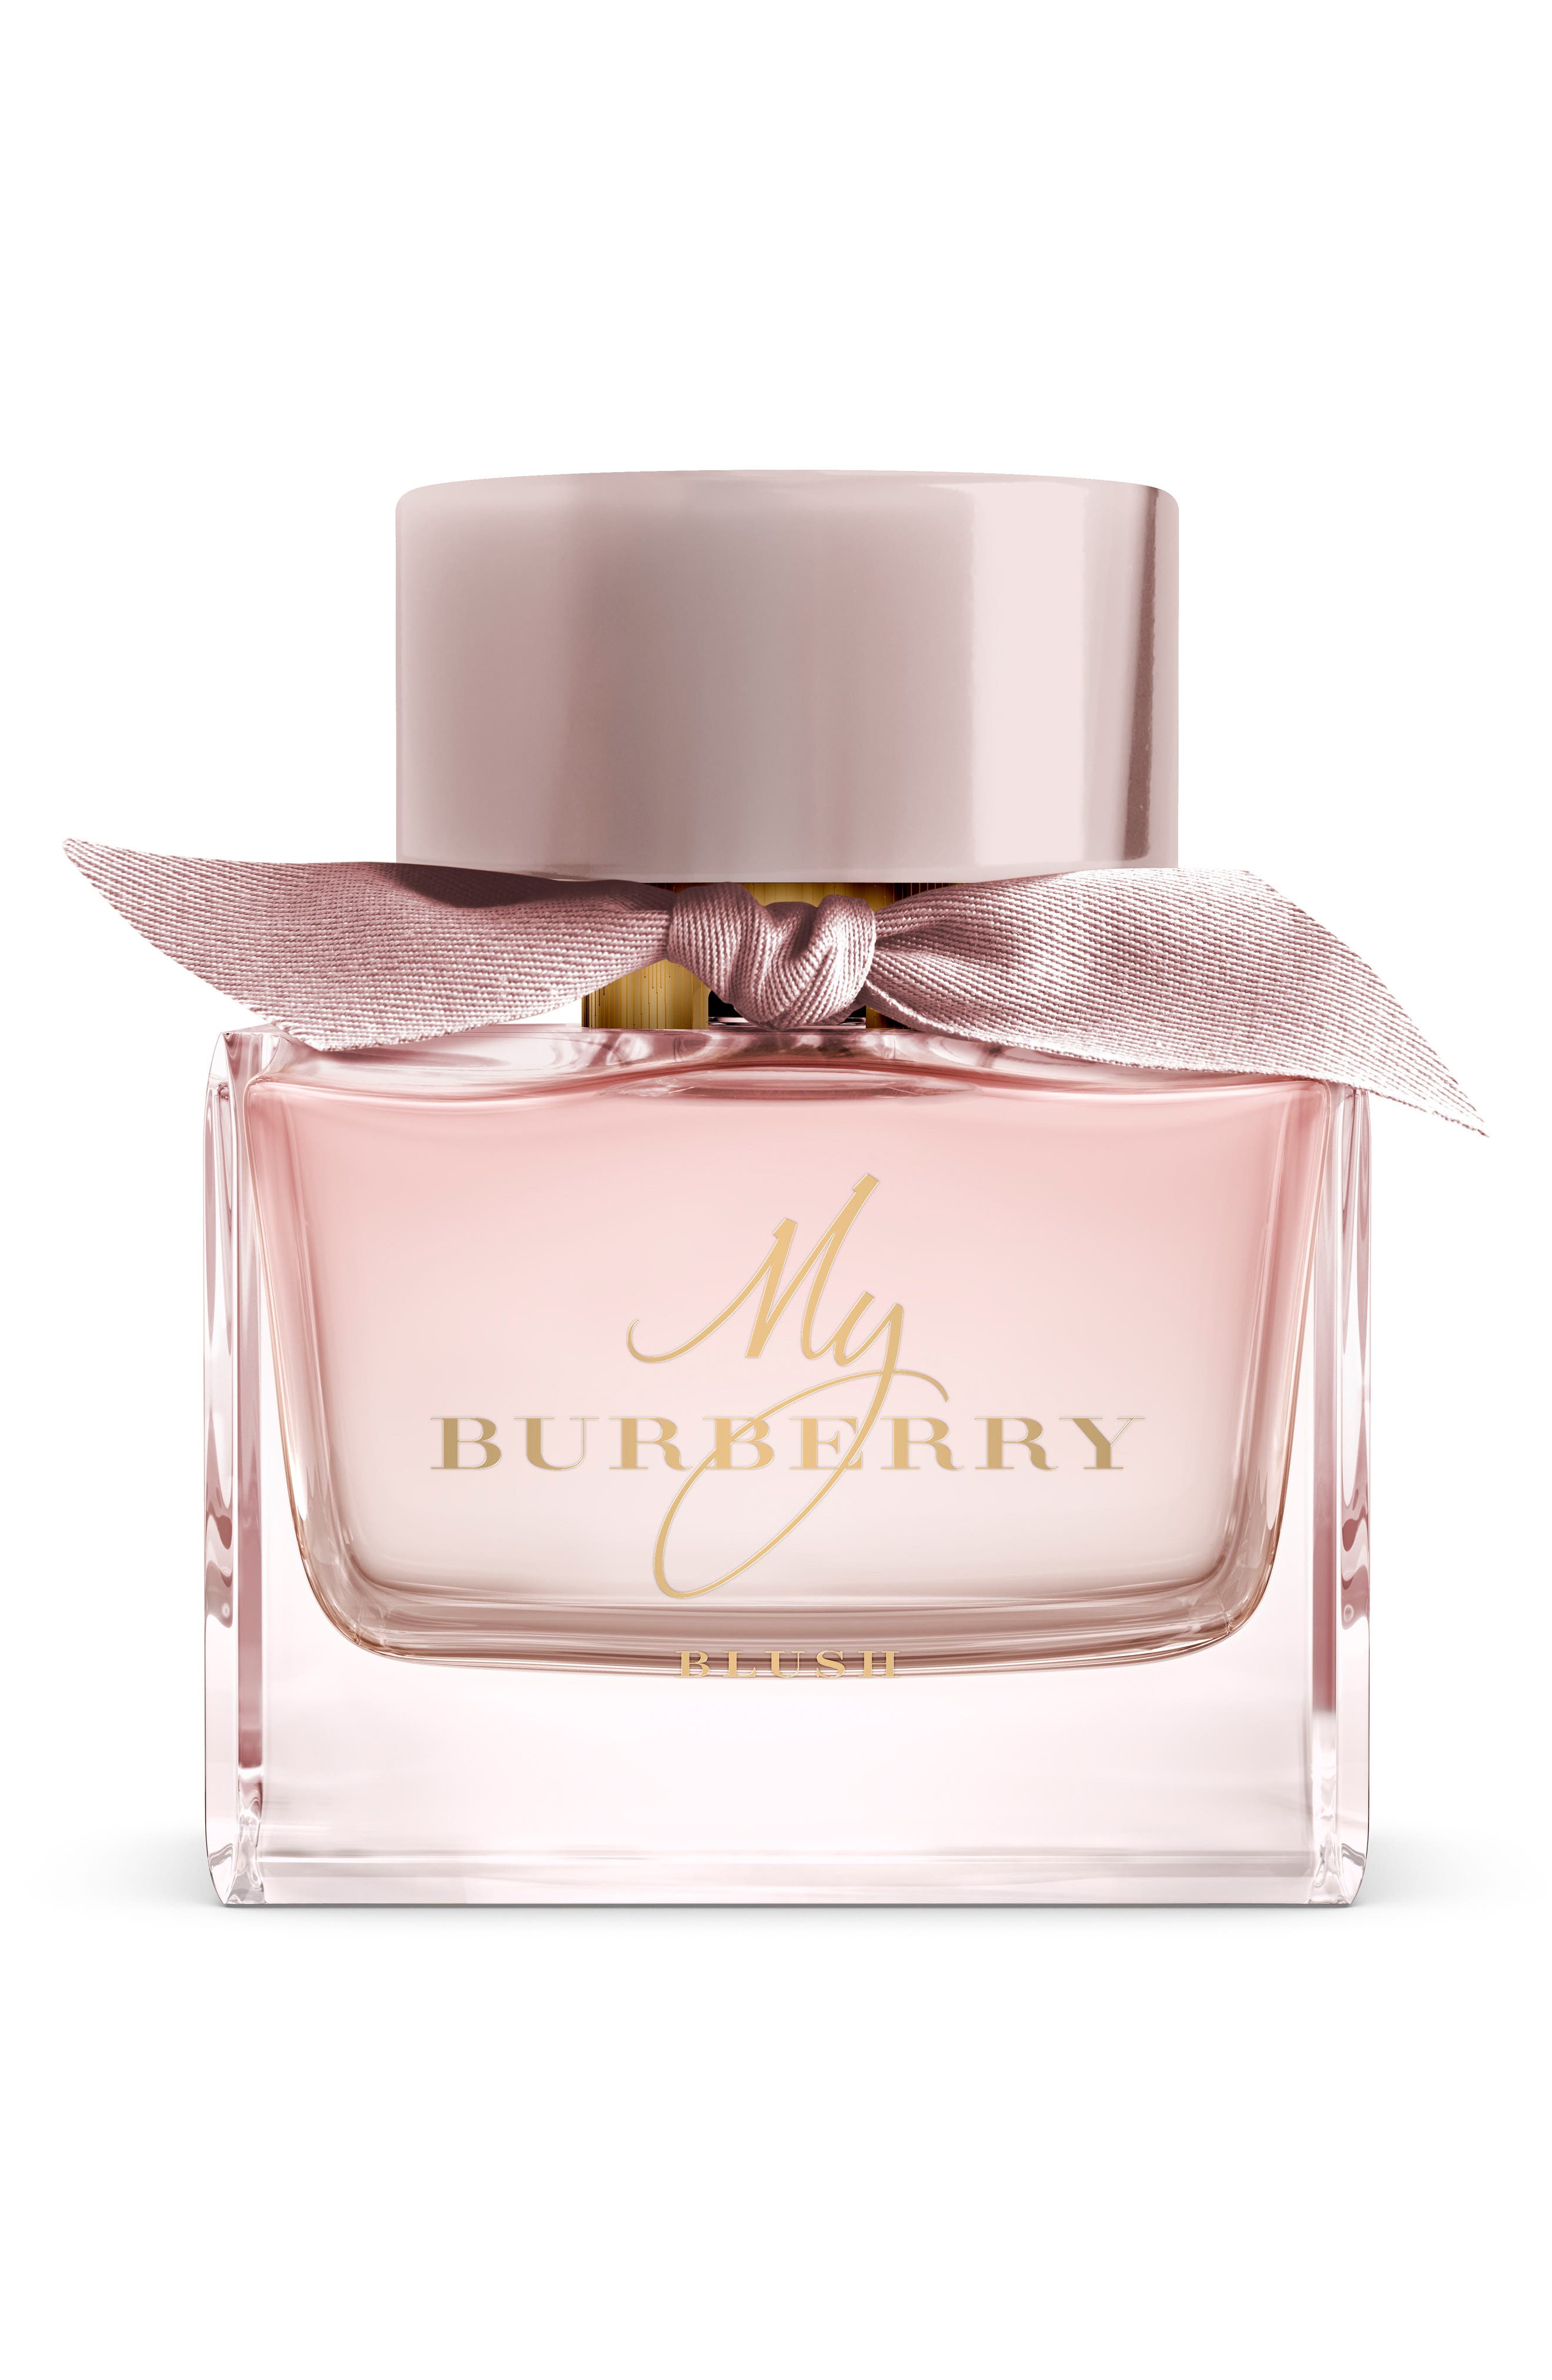 My Burberry Blush Eau de Parfum 